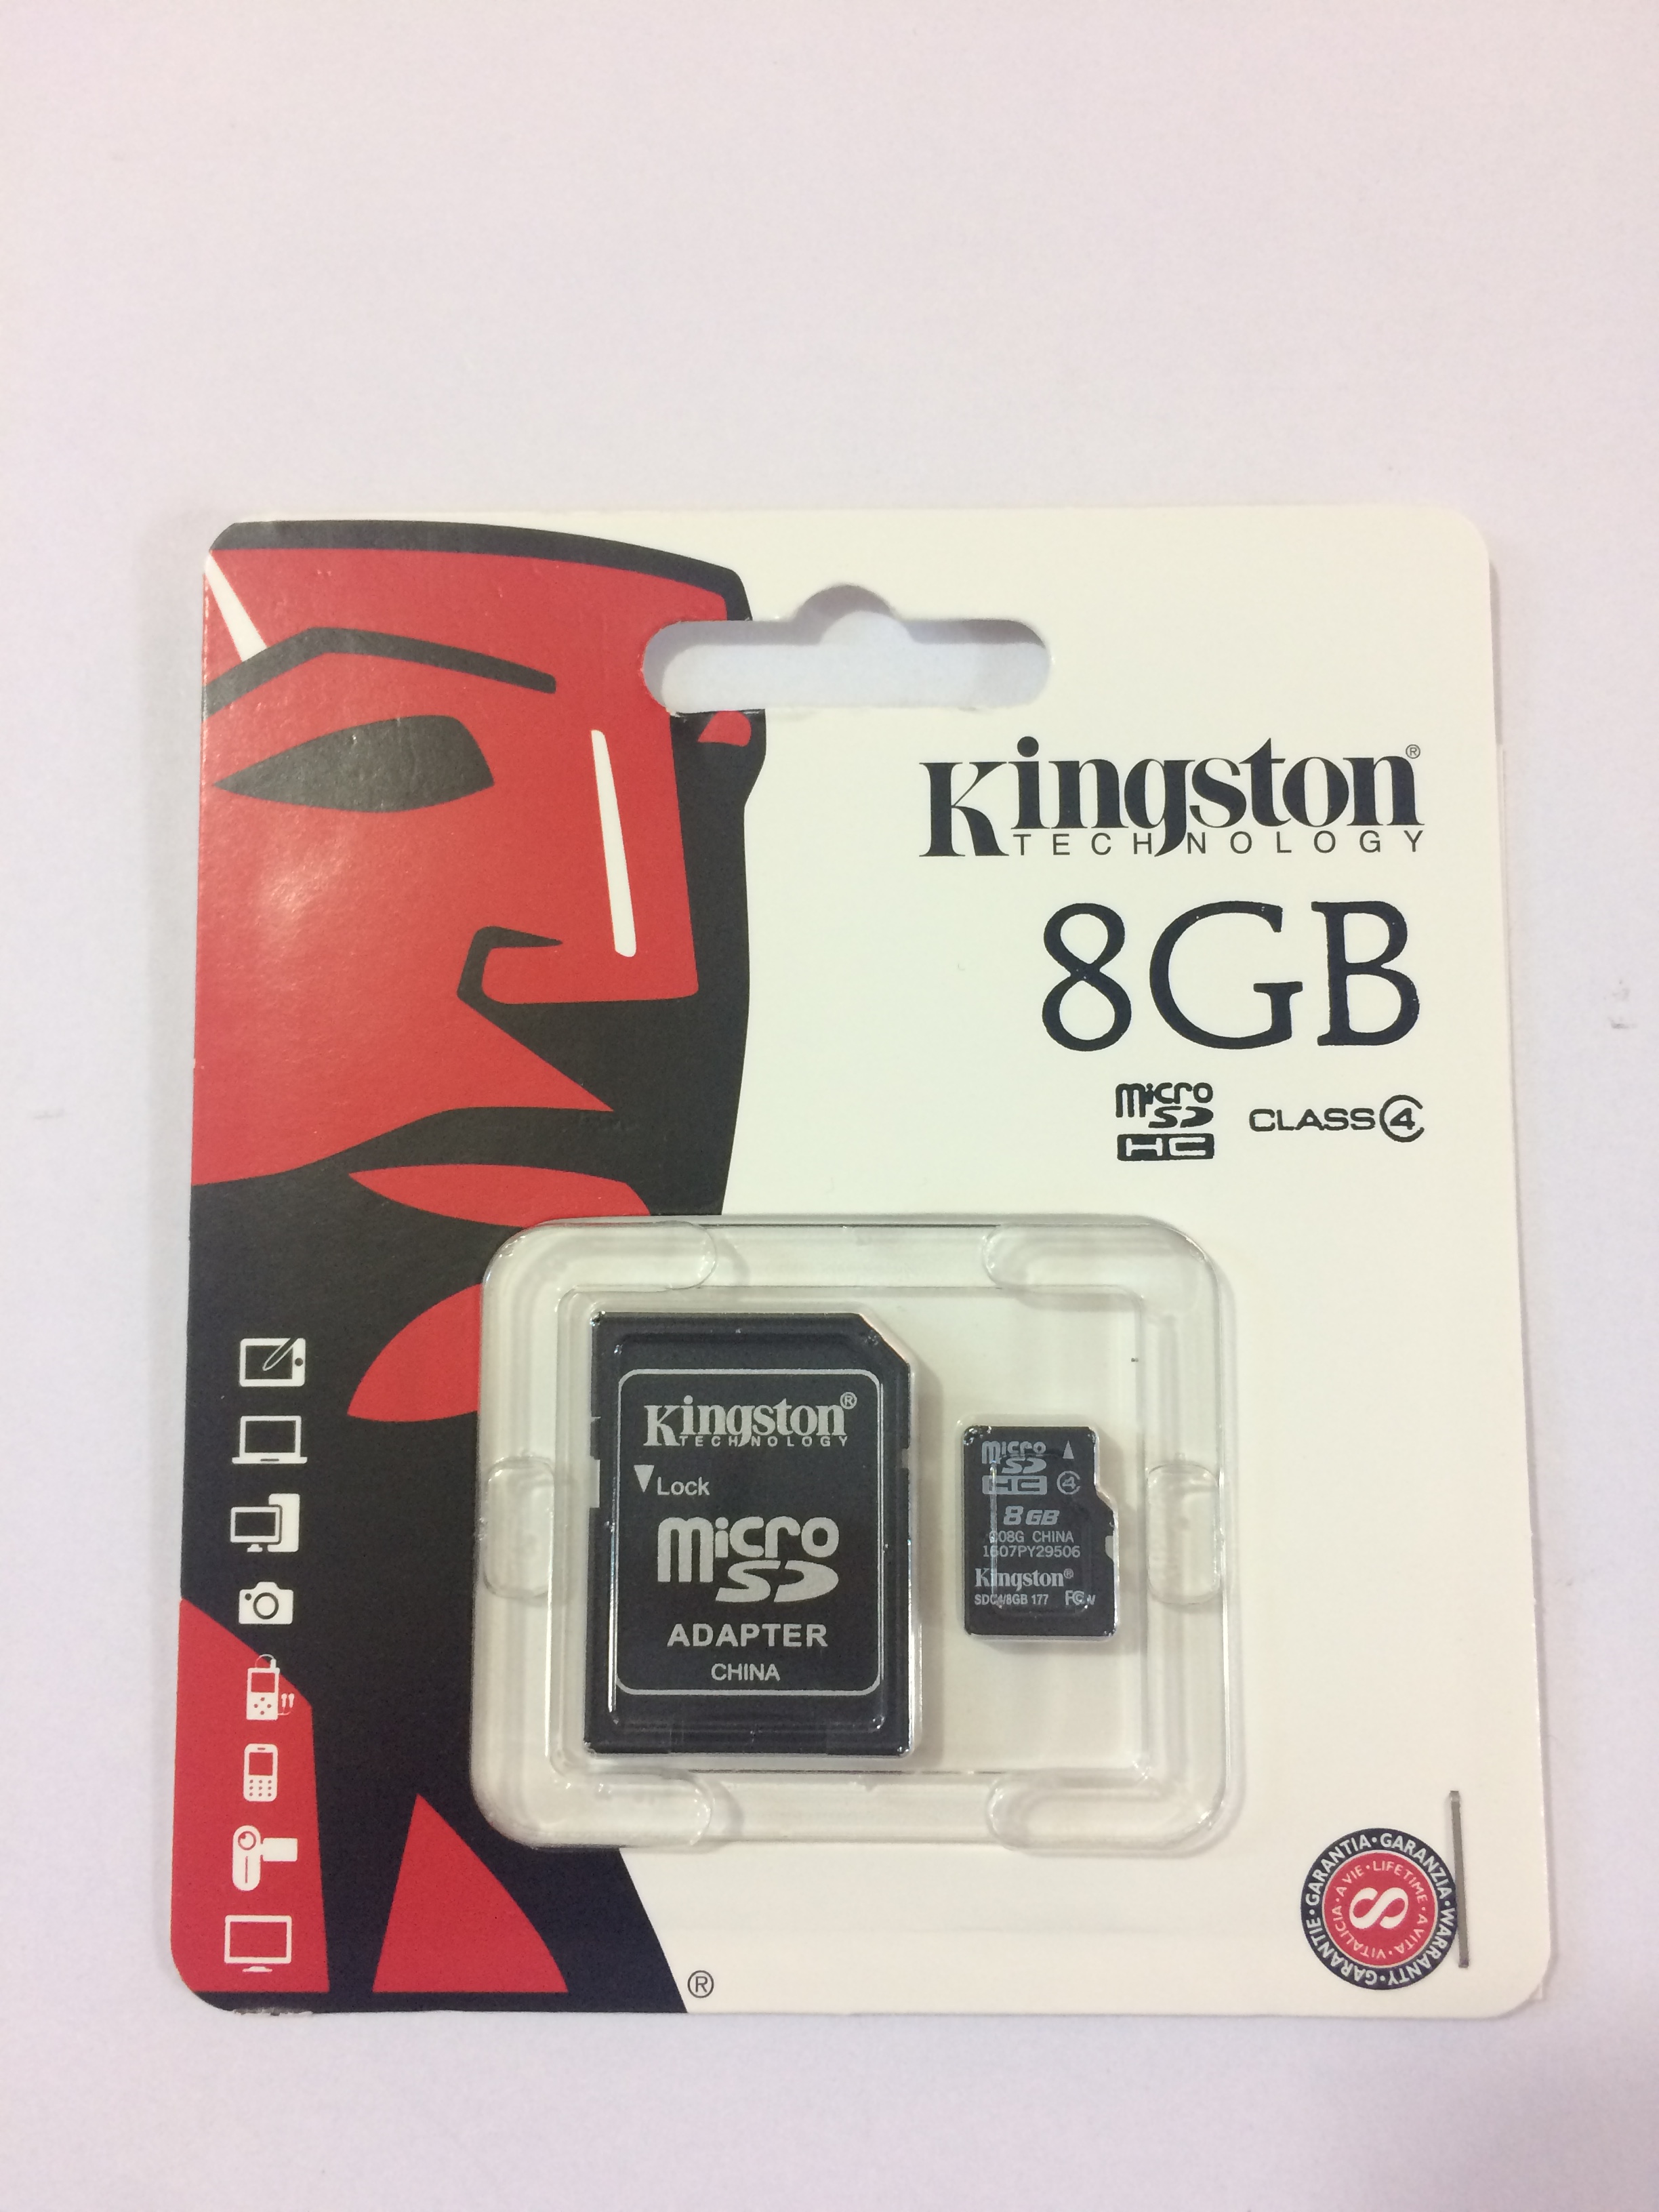 KINGSTON  8 GB MICRO SD CARD(class 4)